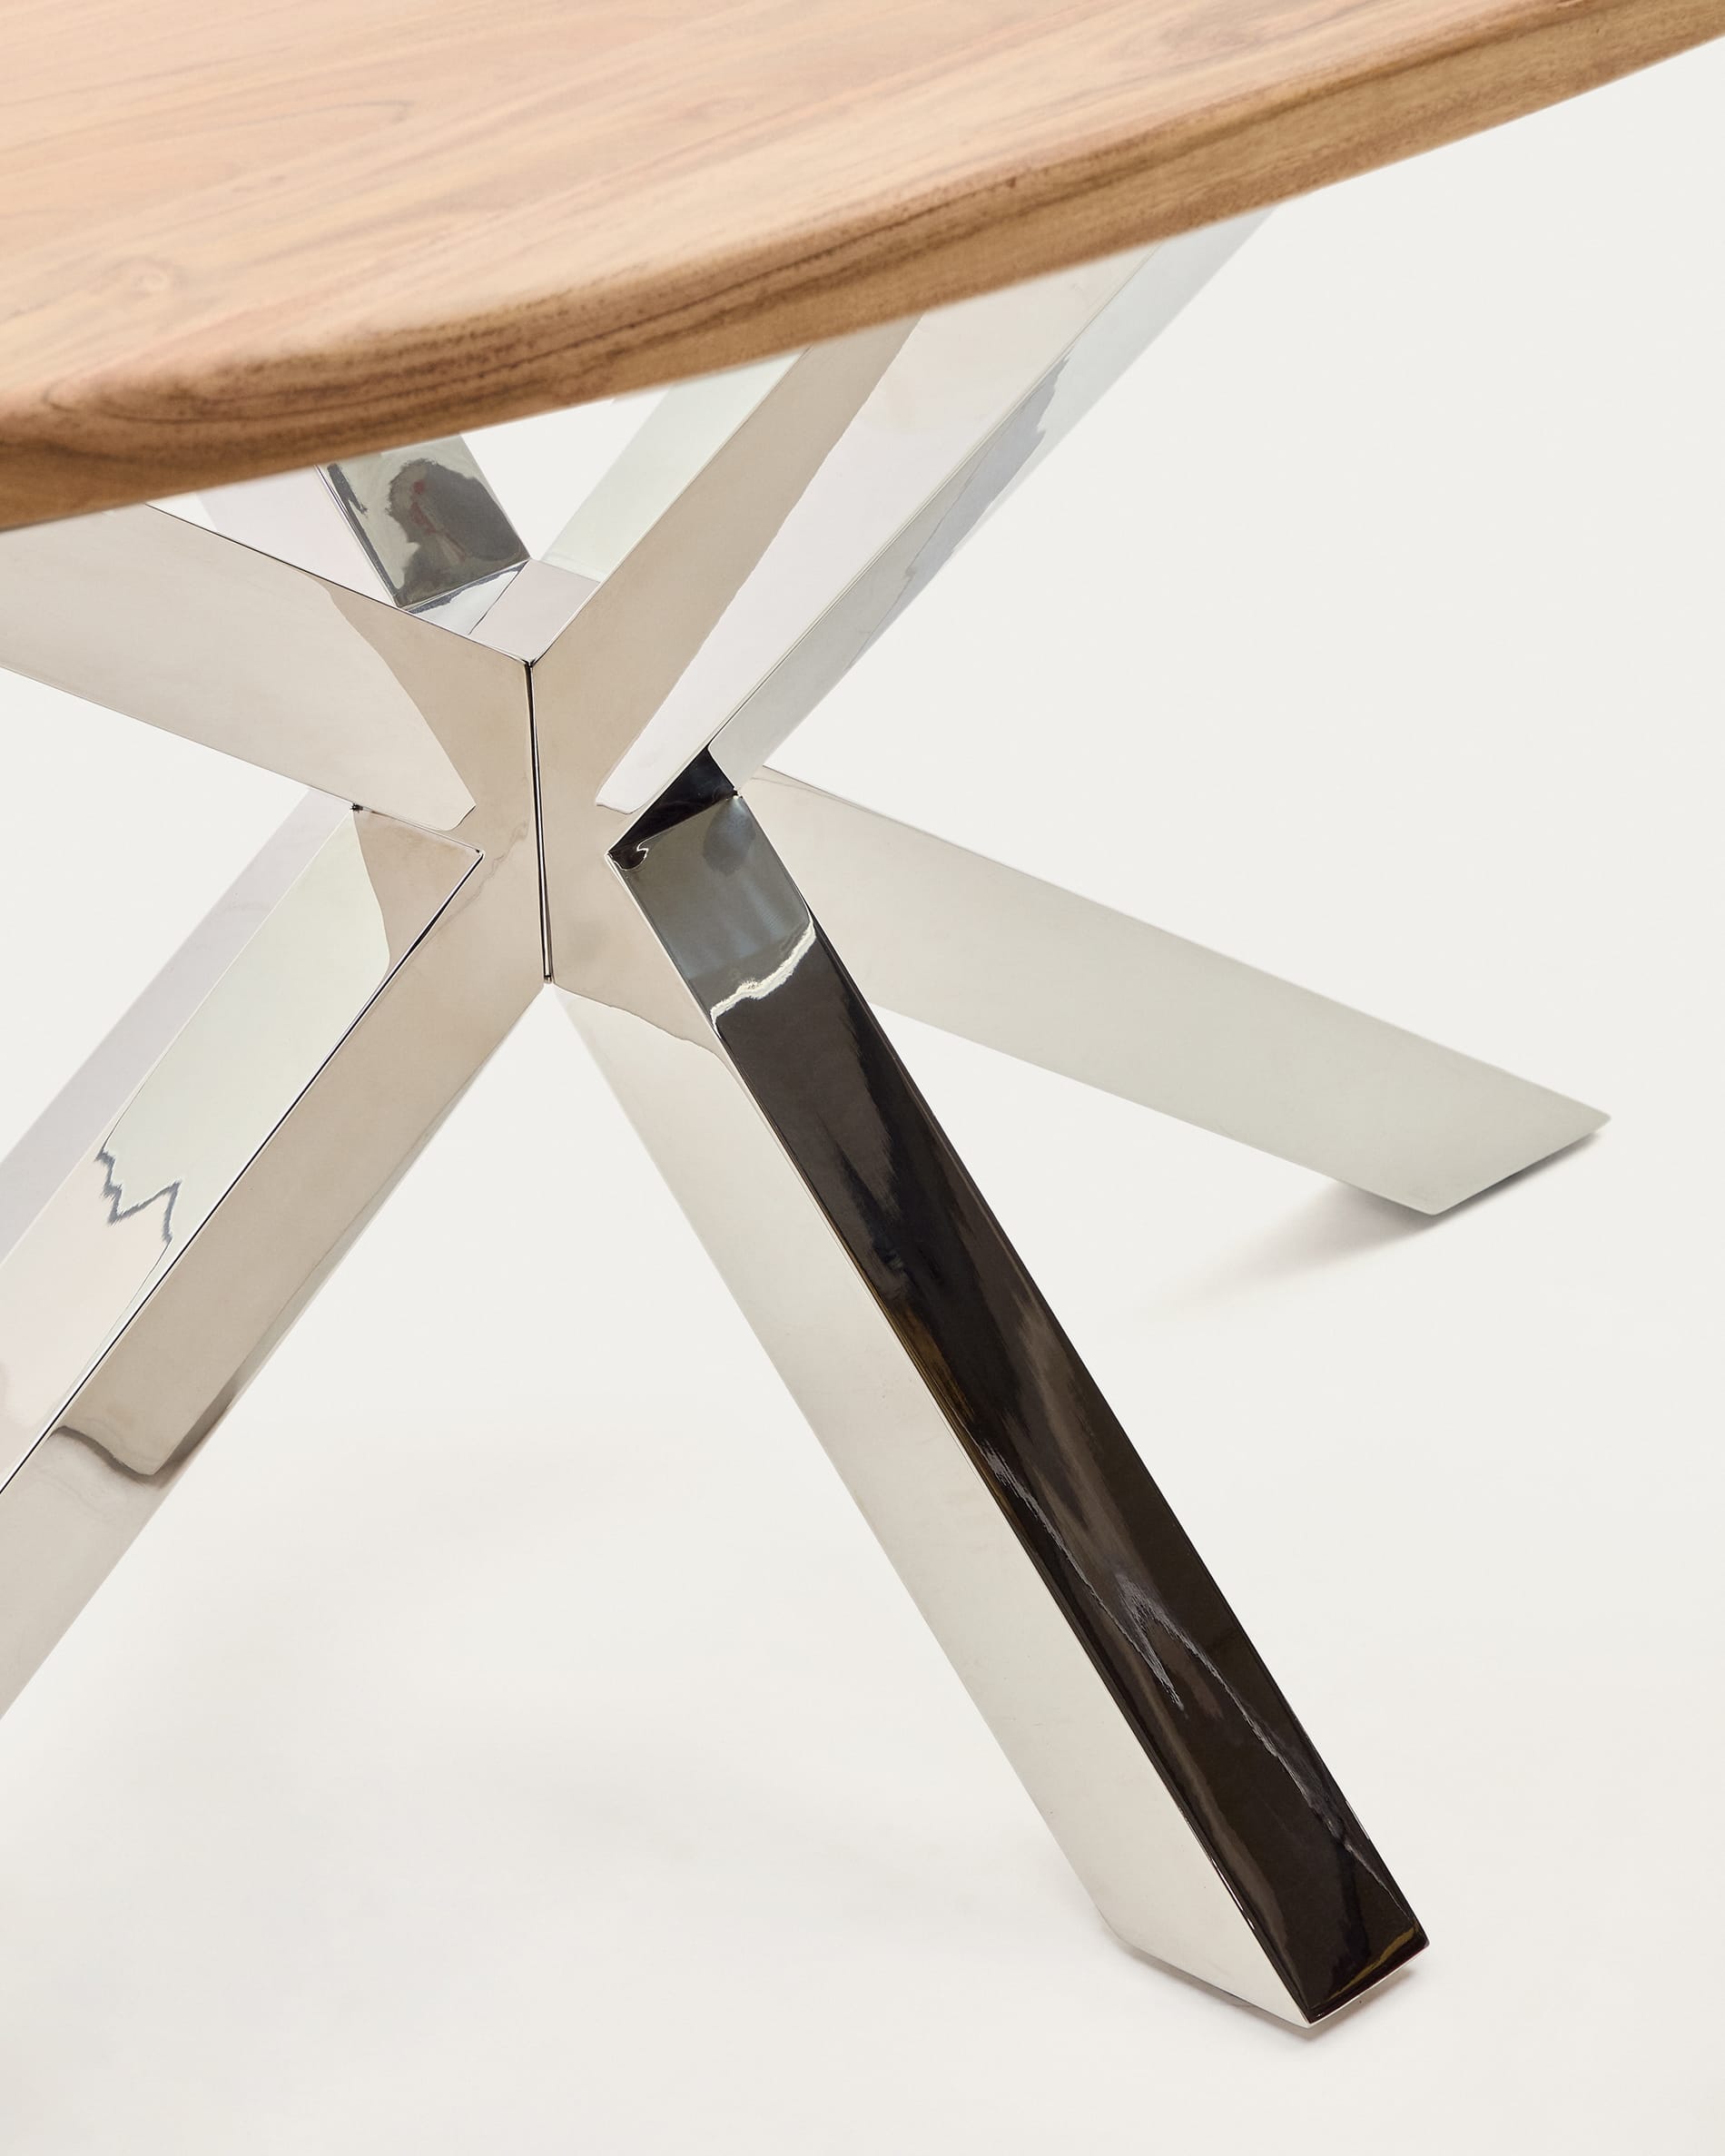 Argo ovális asztal tömör akácfából és rozsdamentes acél lábakkal Ø 200 x 100 cm